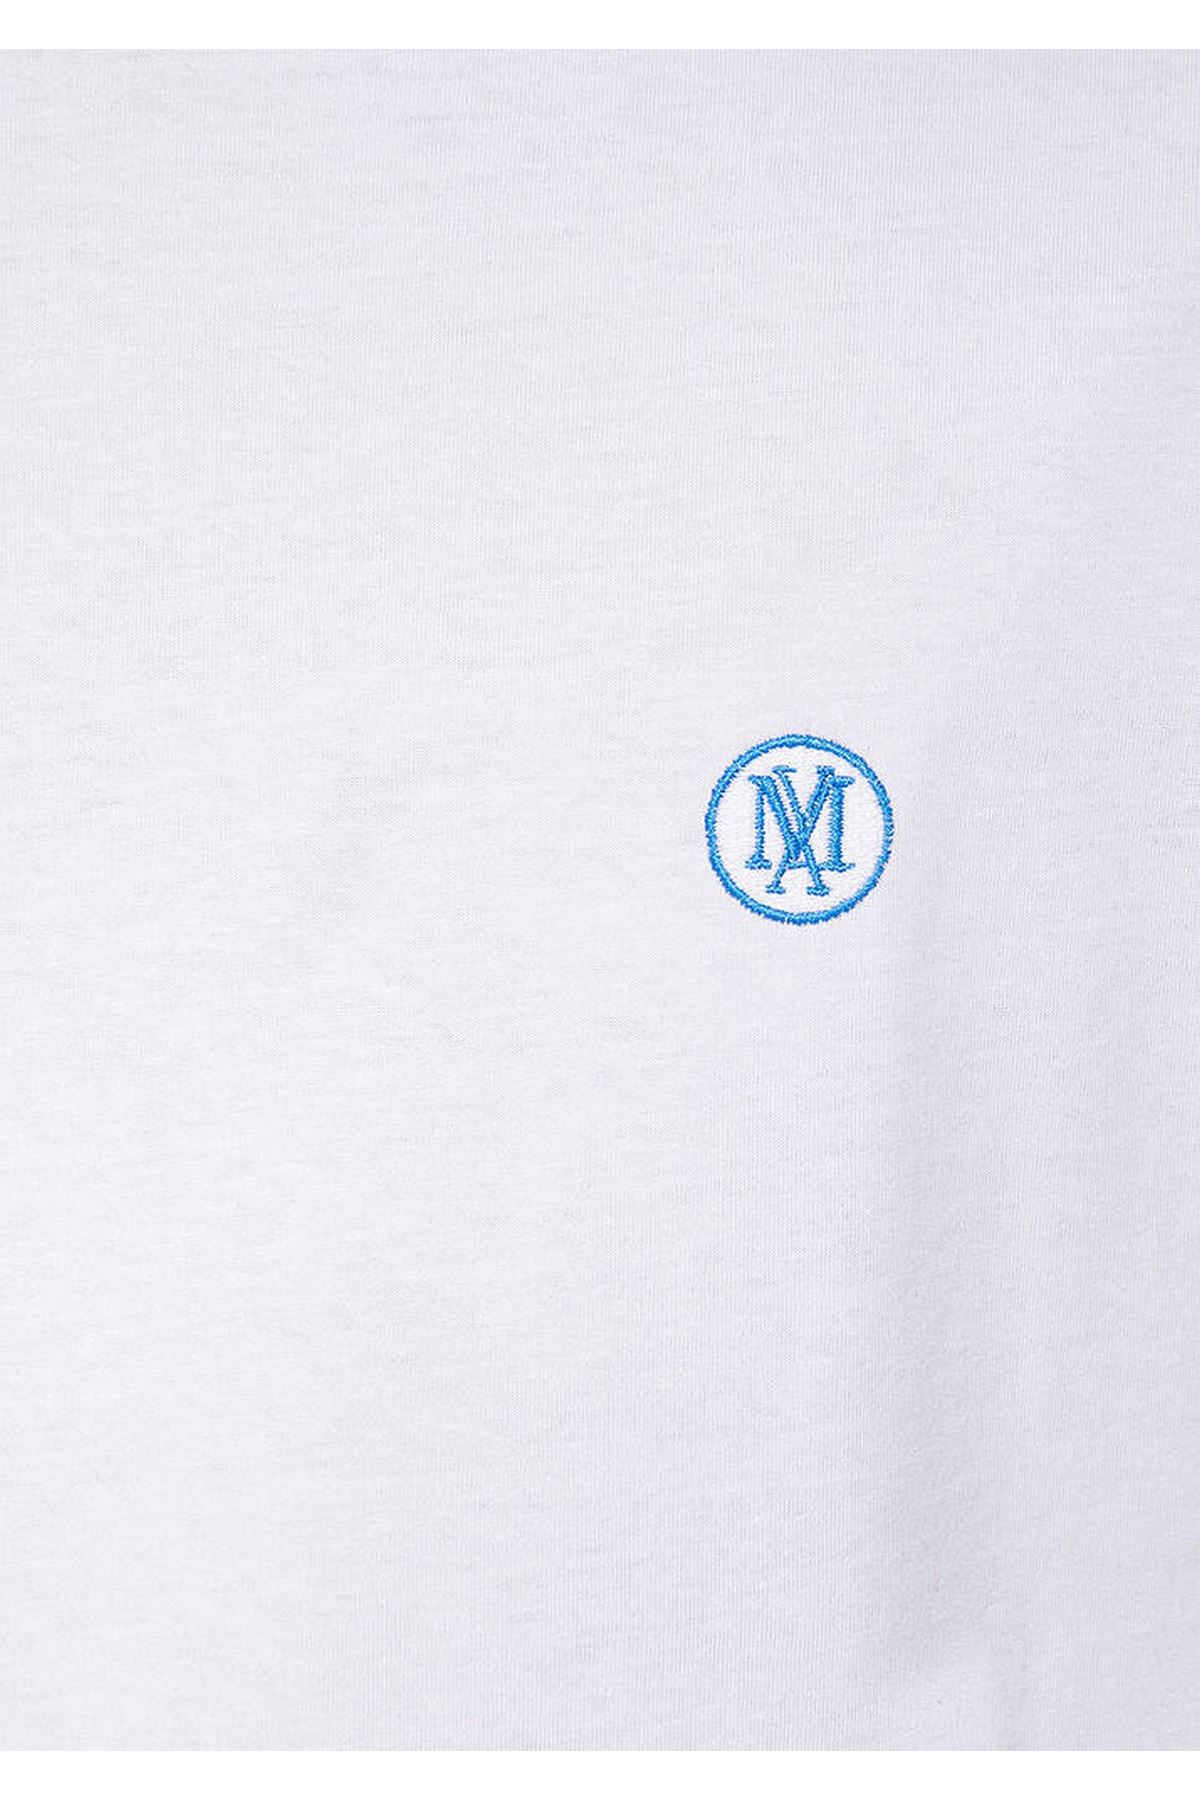 Logo Nakışlı  Mavi Erkek Beyaz Tişört - M067074-620